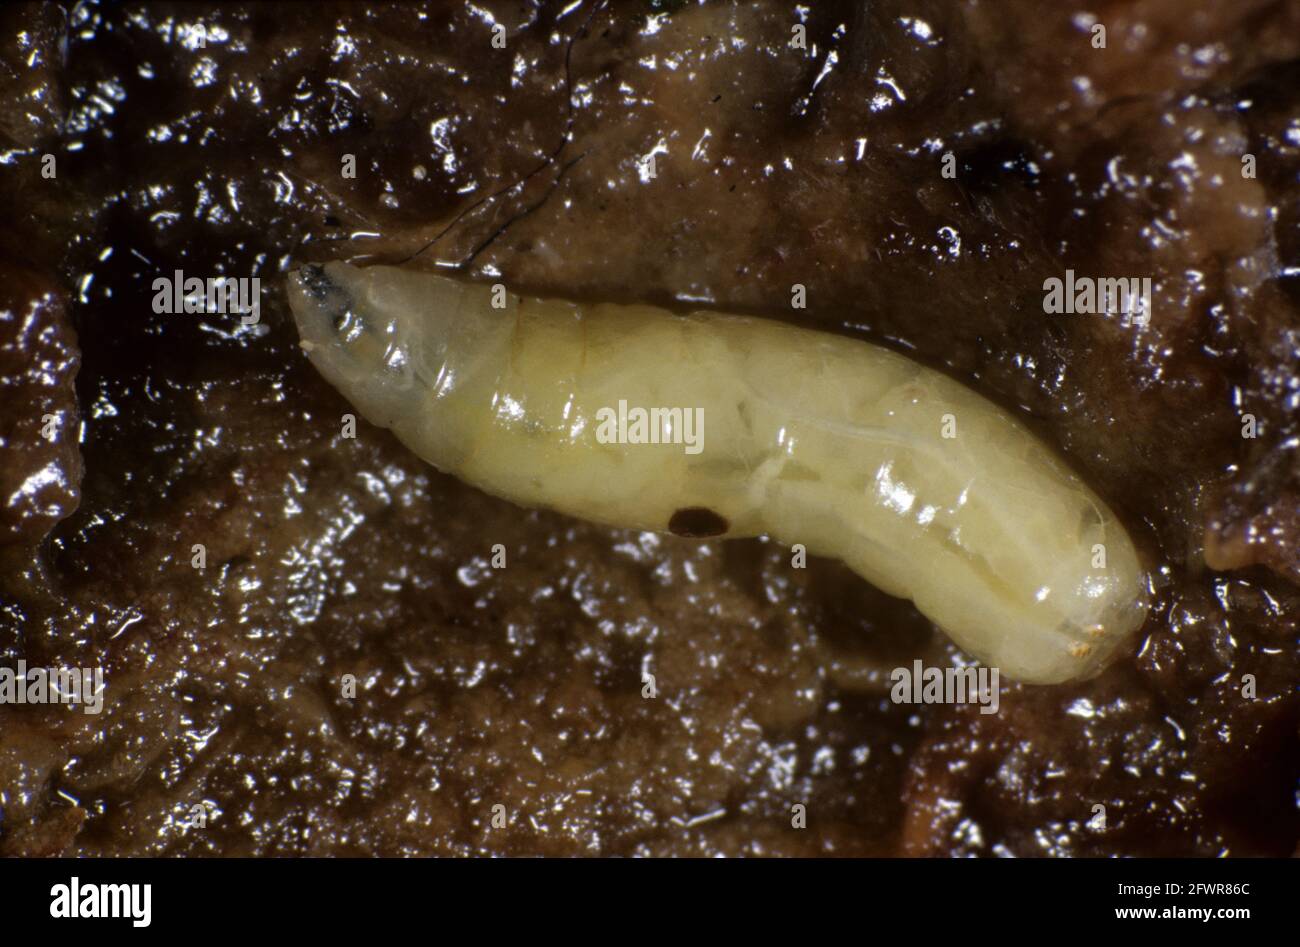 Mosca o medfly di frutta mediterranea (Ceratite capitata) vola larva in frutta marcata Foto Stock